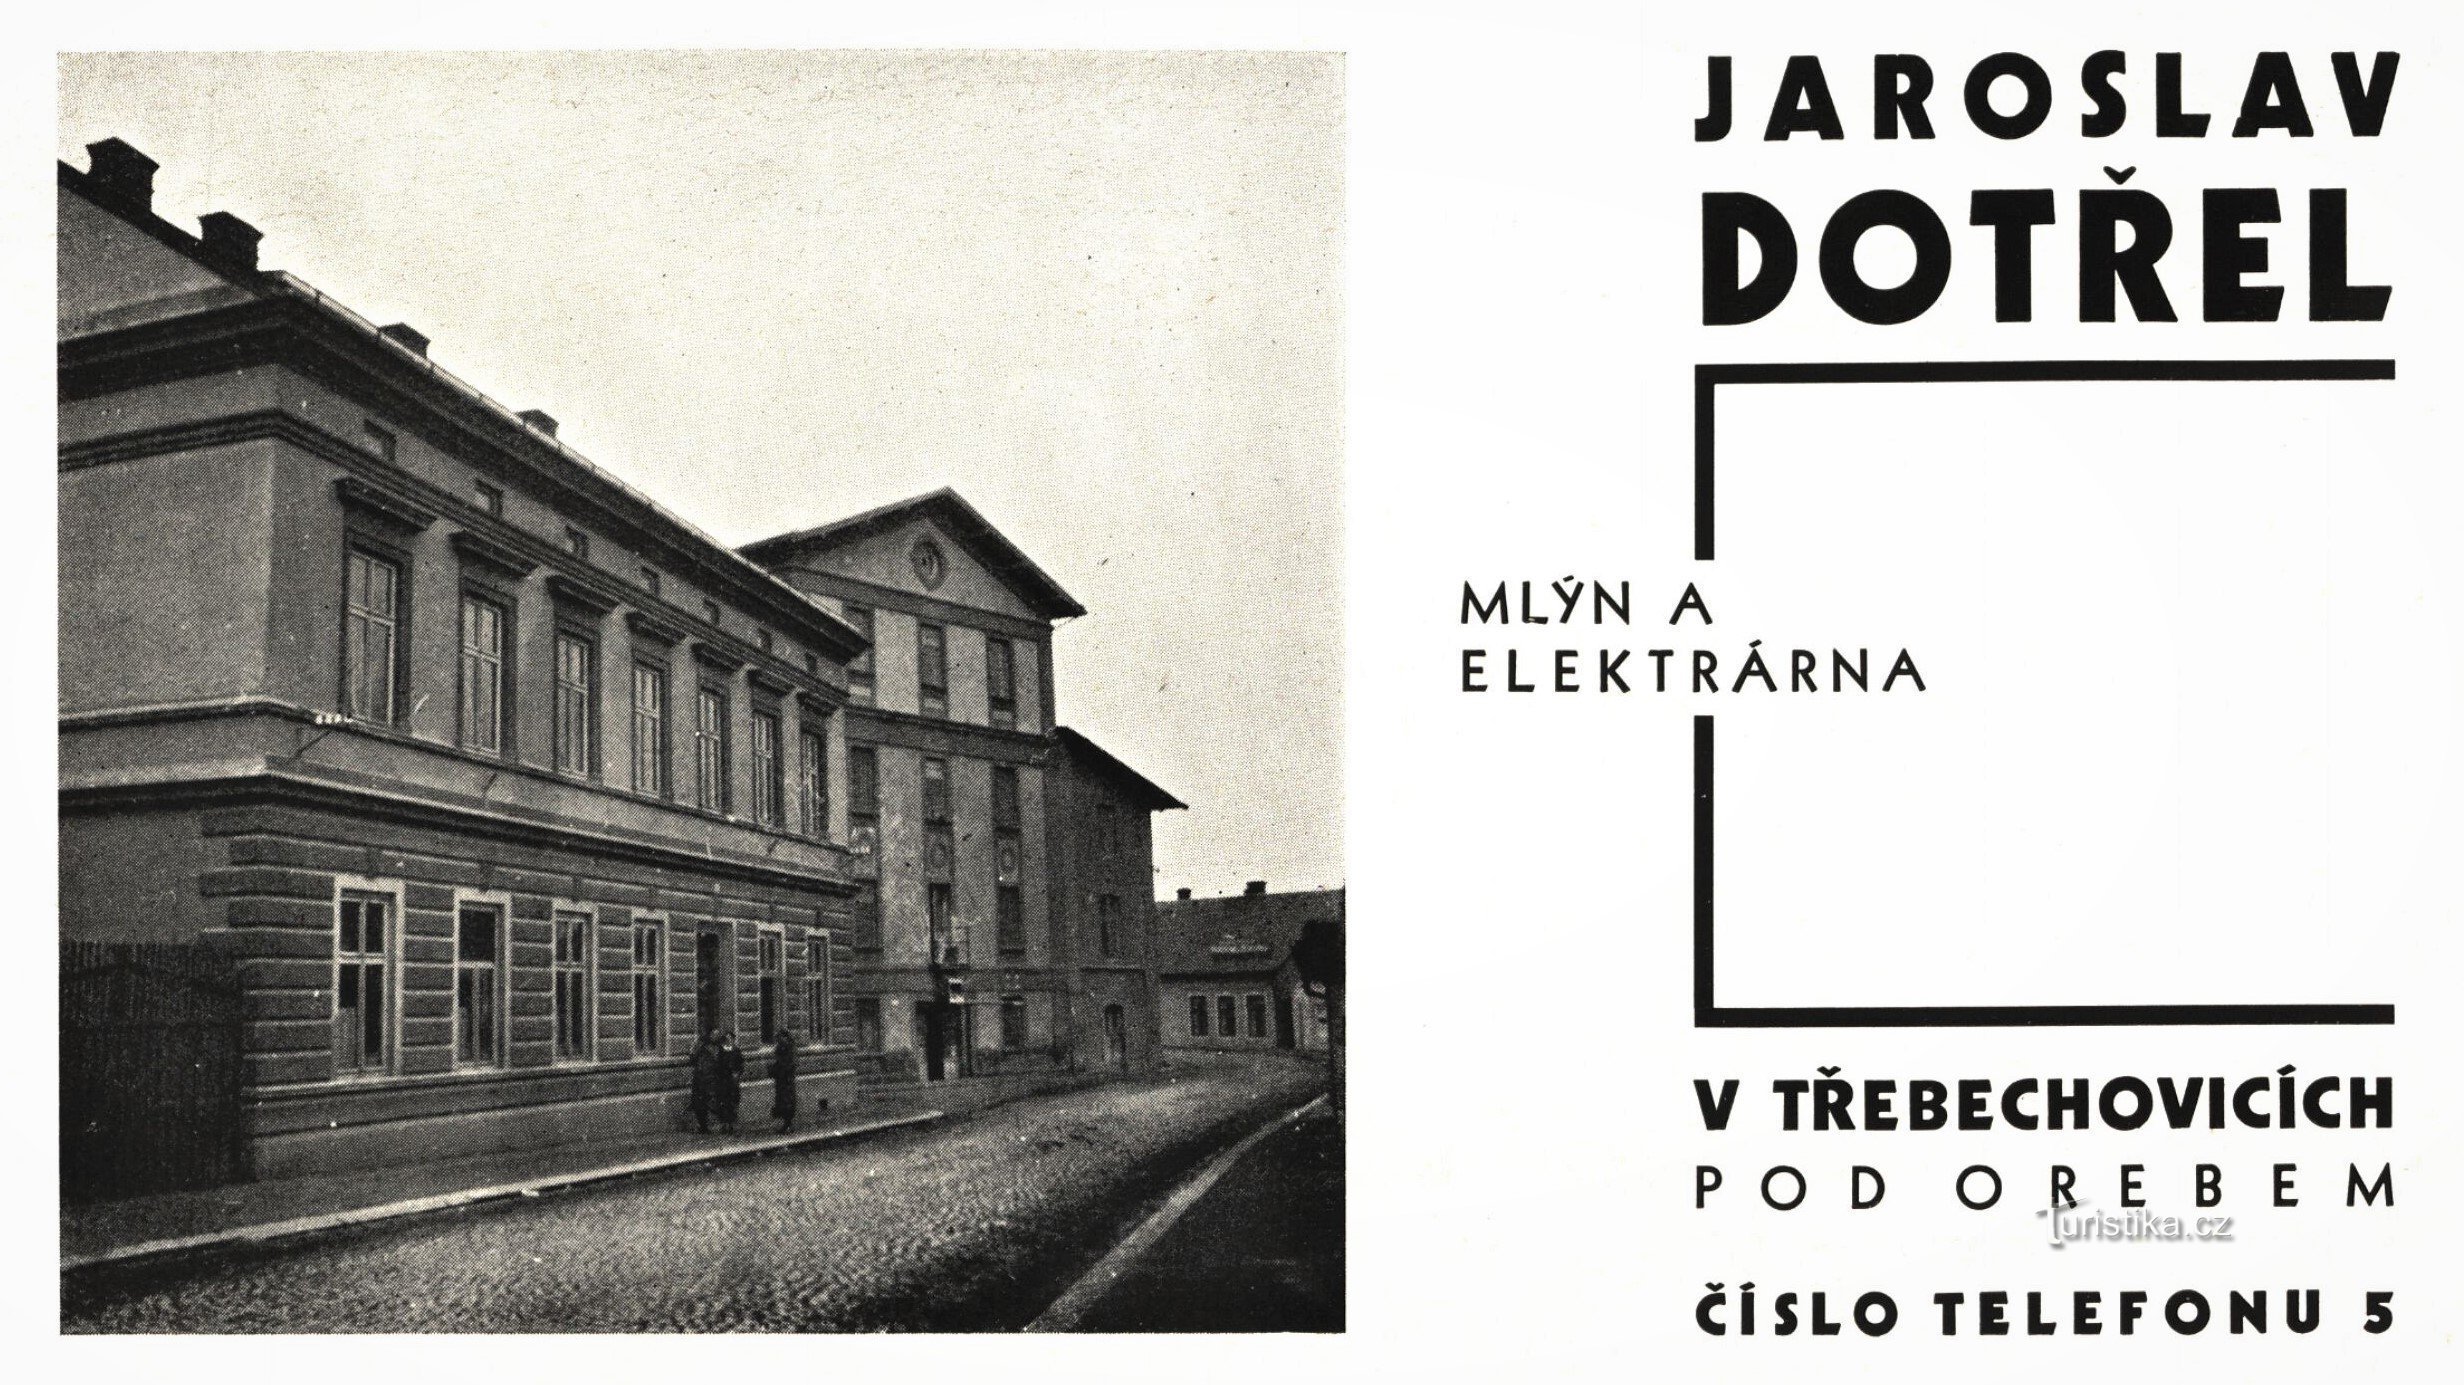 磨坊主 Jaroslav Dotřel 的时期广告（1934 年）